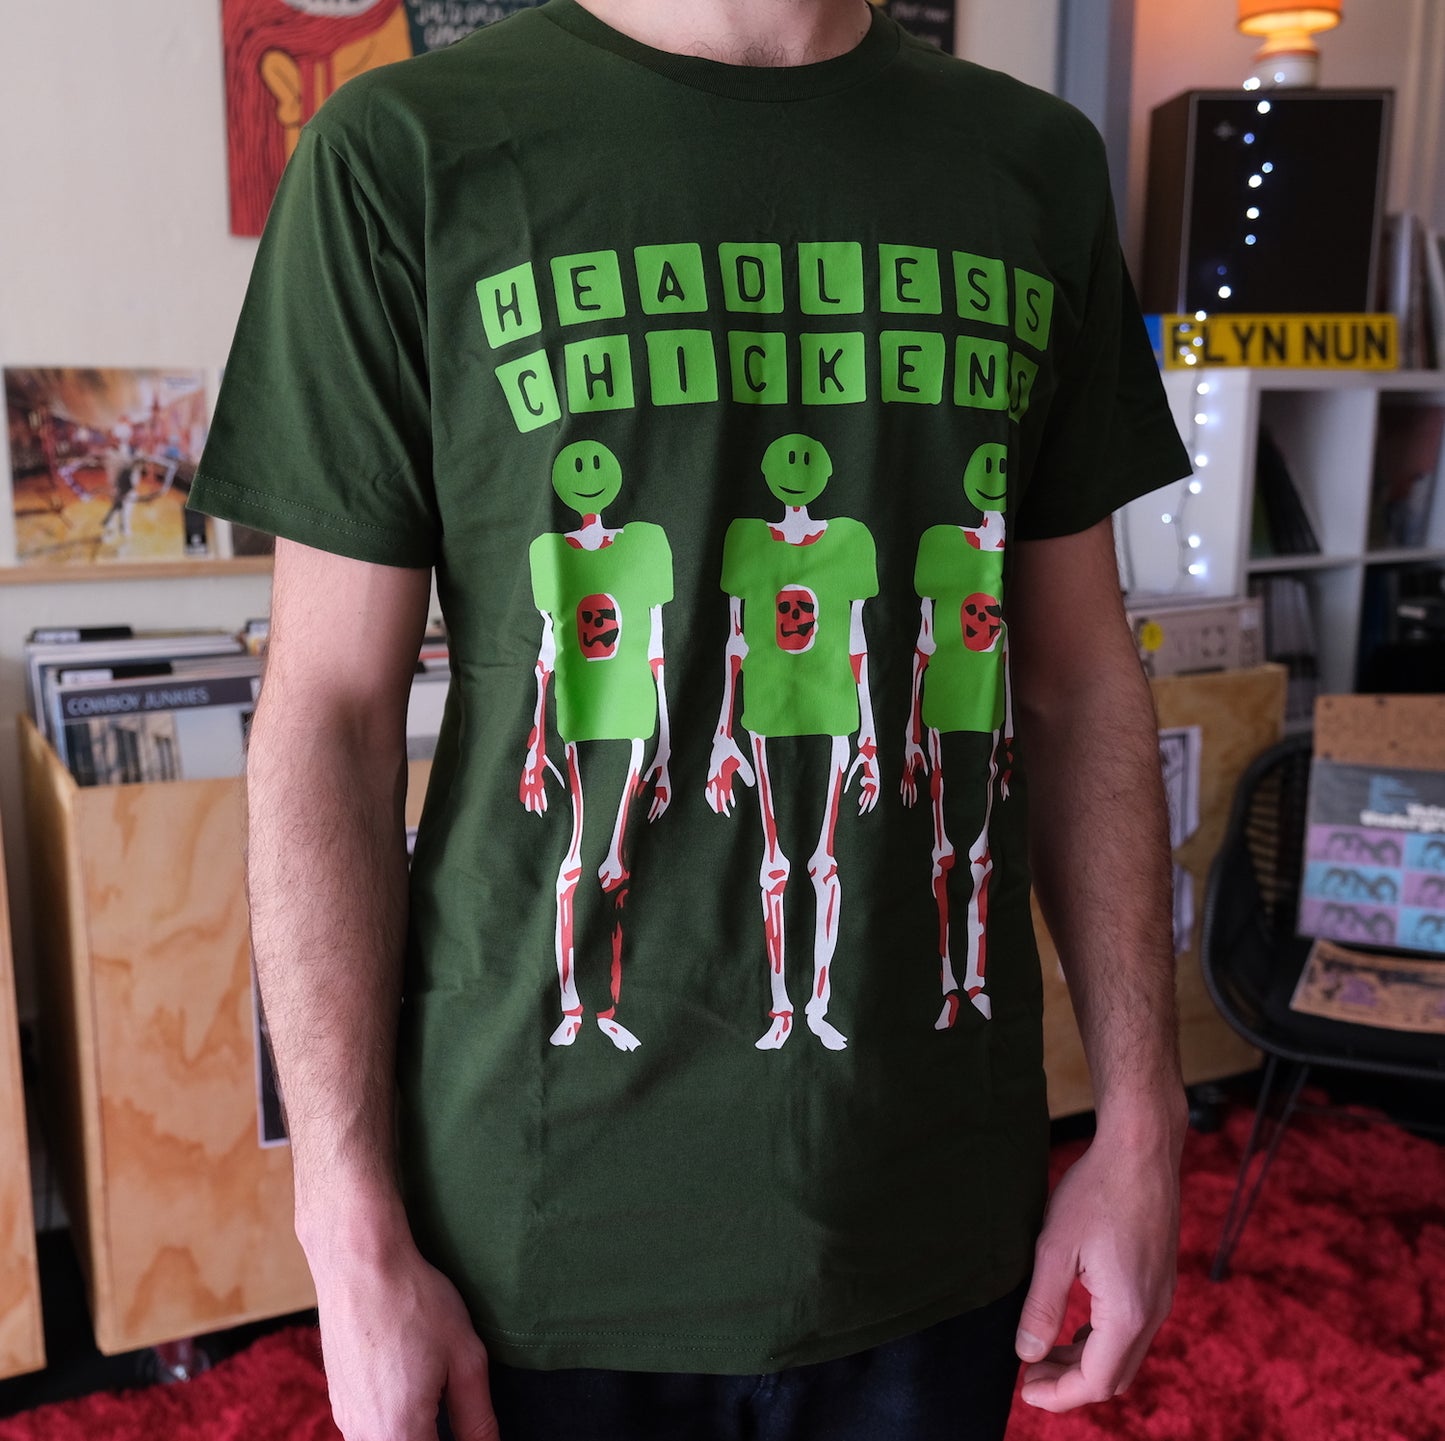 
                  
                    Headless Chickens - Skeletons T-Shirt (Green) I NZ Music & Band Merch
                  
                